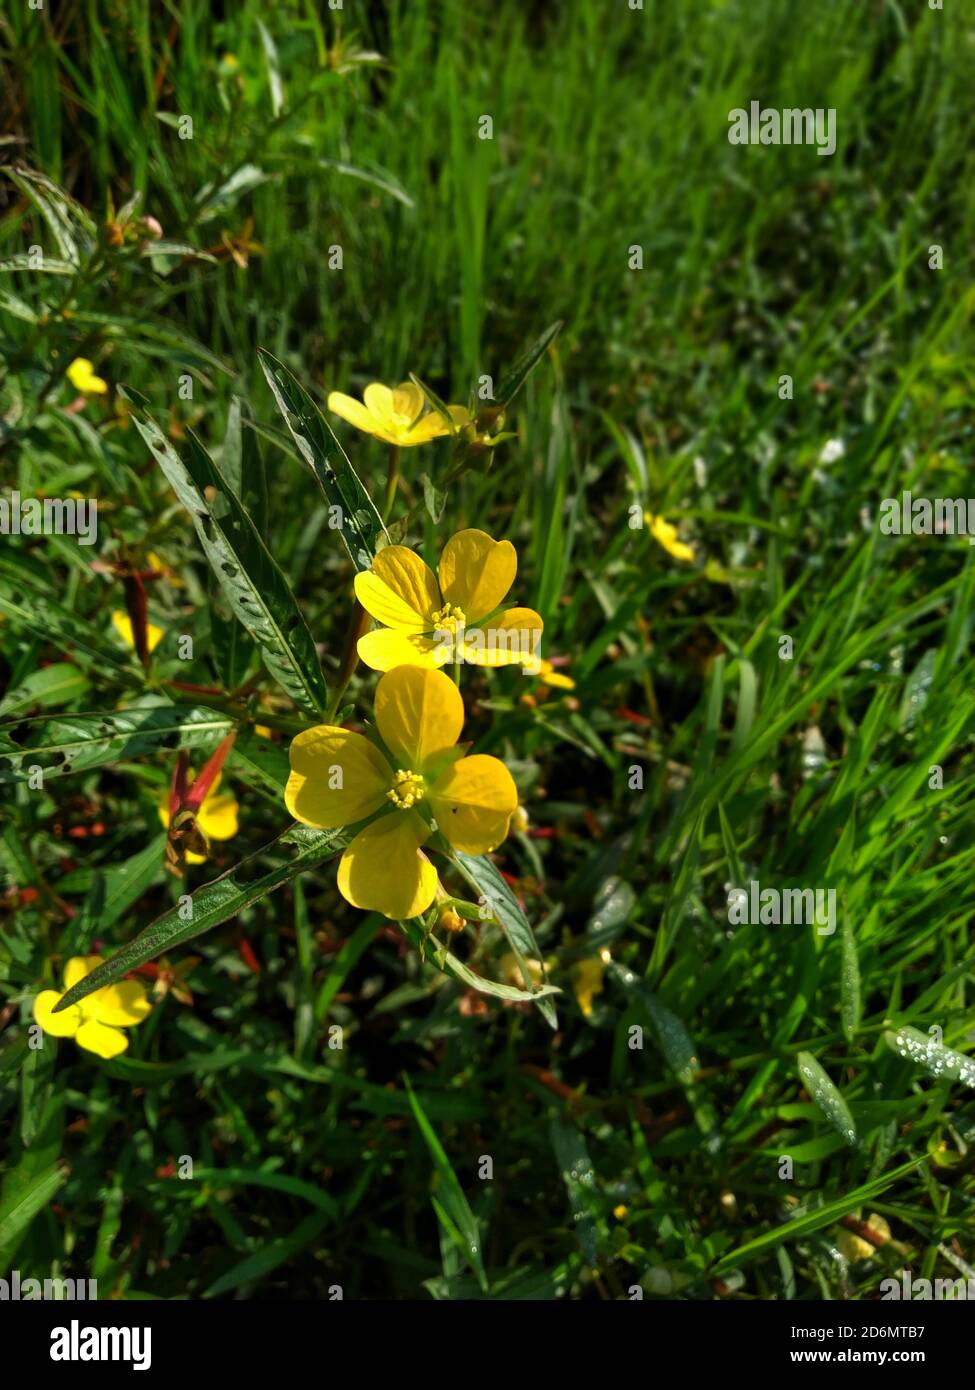 Gelbe Blume Ludwigia octovalvis ist eine krautige Pflanzenart. Ludwigia octovalvis gehört zur Gattung ludwigior, und die Familie downyx Pflanzen. Stockfoto